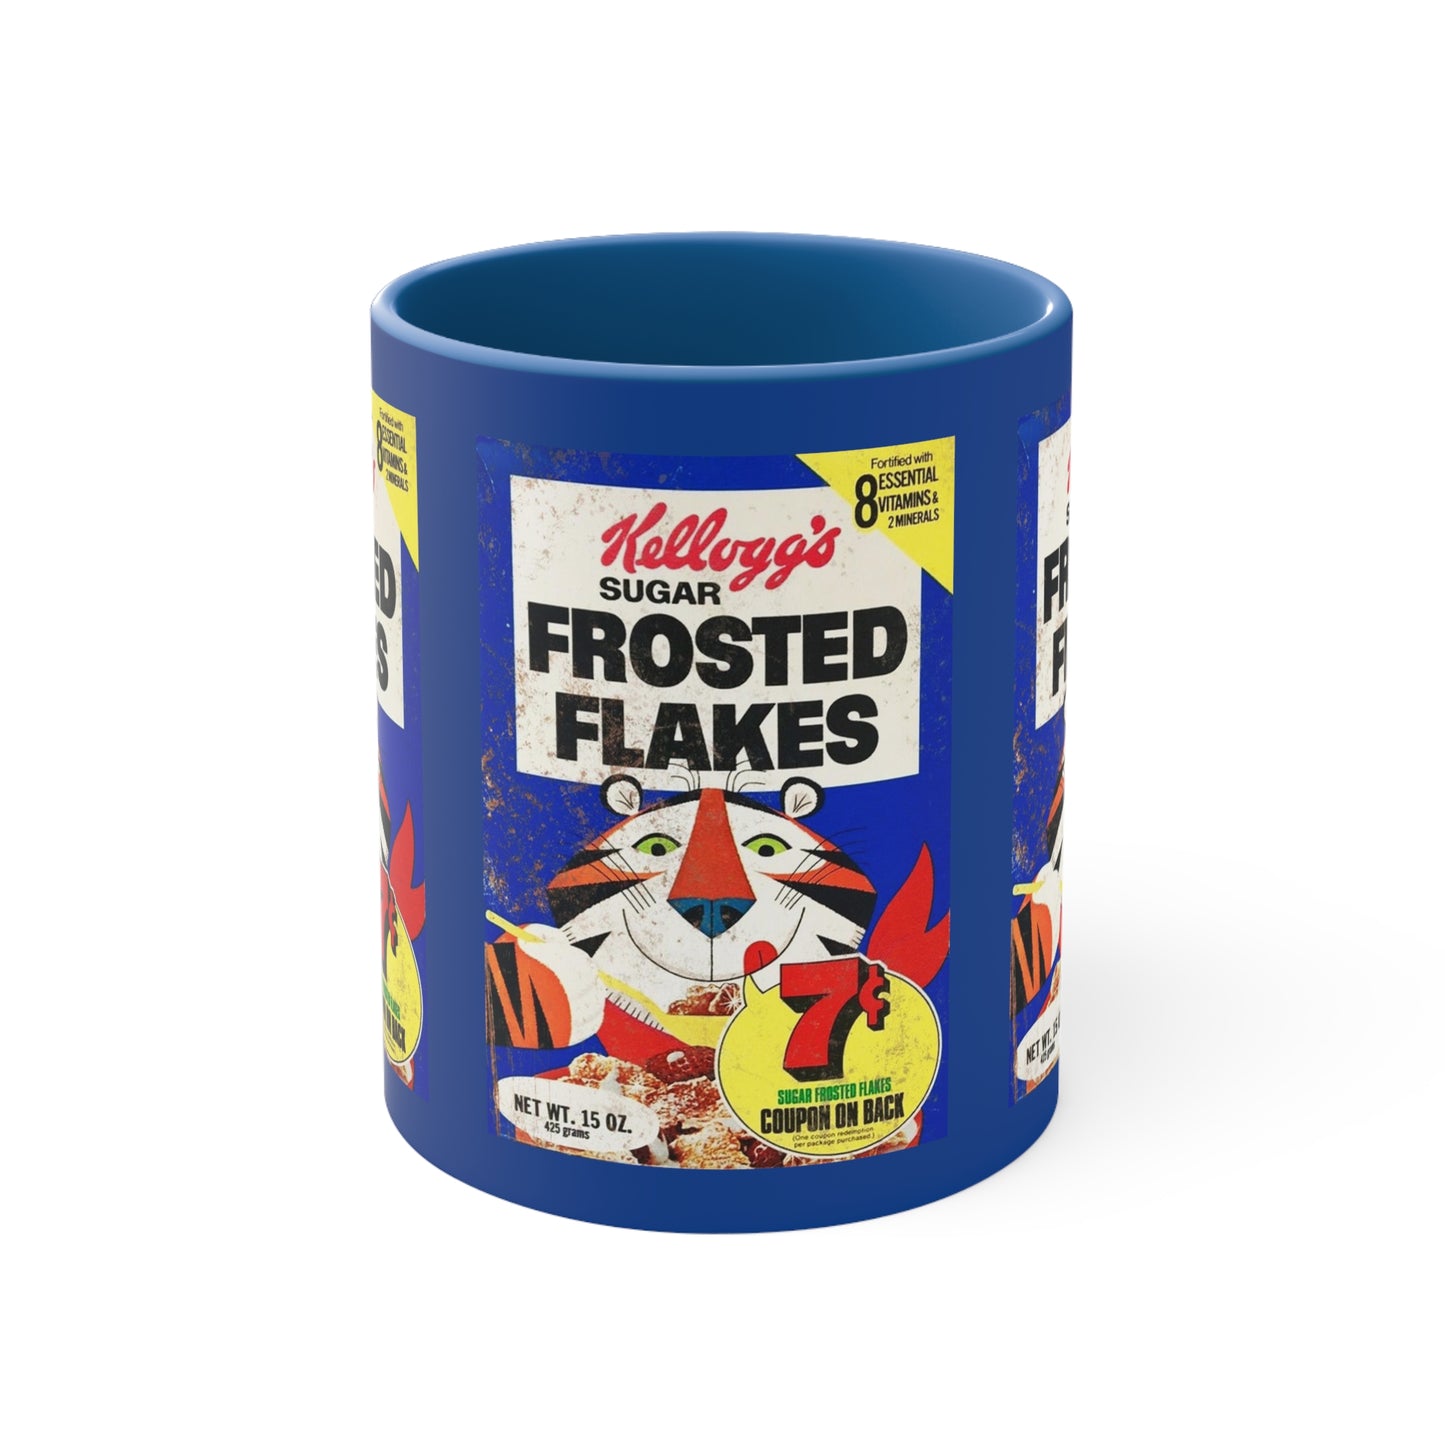 SUGAR FROSTED FLAKES Vintage Breakfast Cereal Mug 11oz